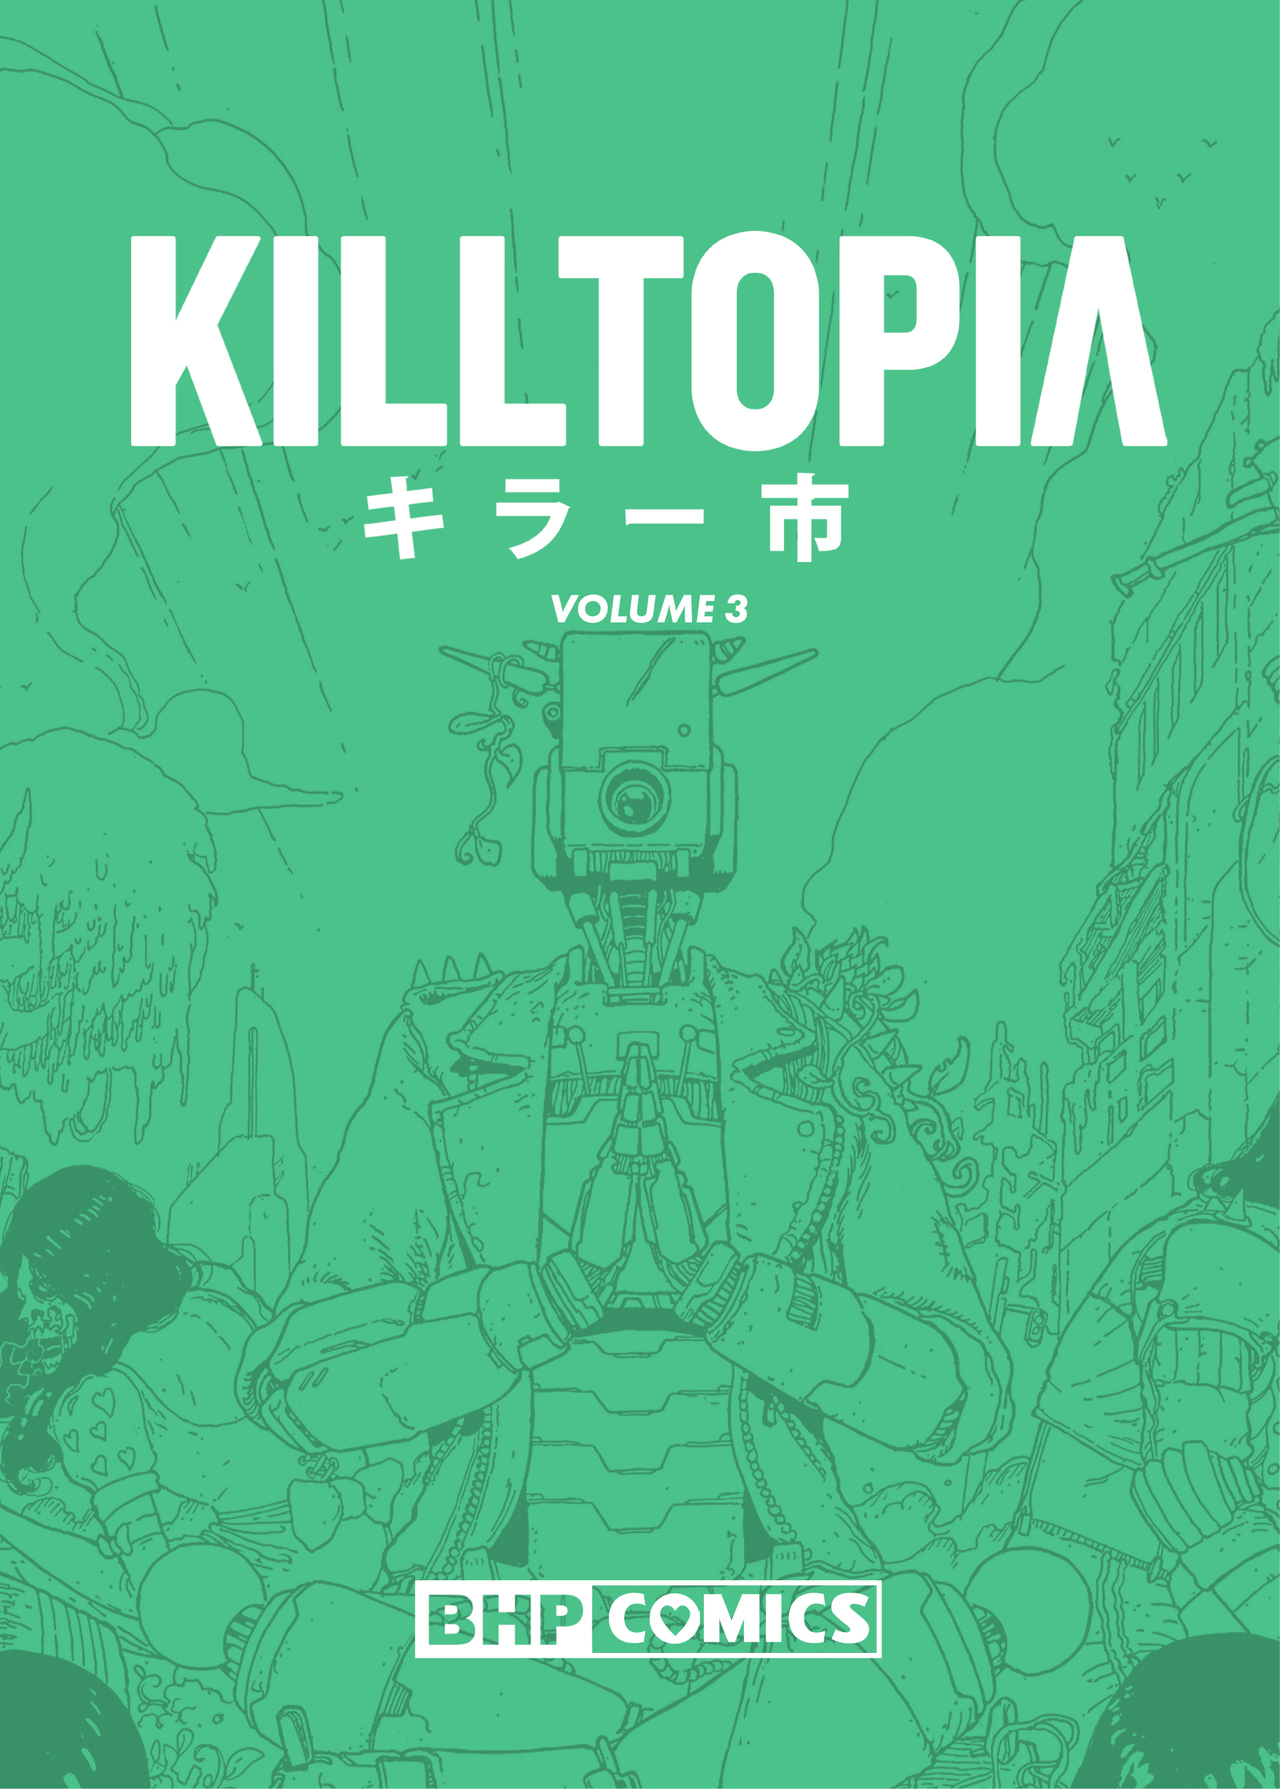 Read online Killtopia comic -  Issue #3 - 2